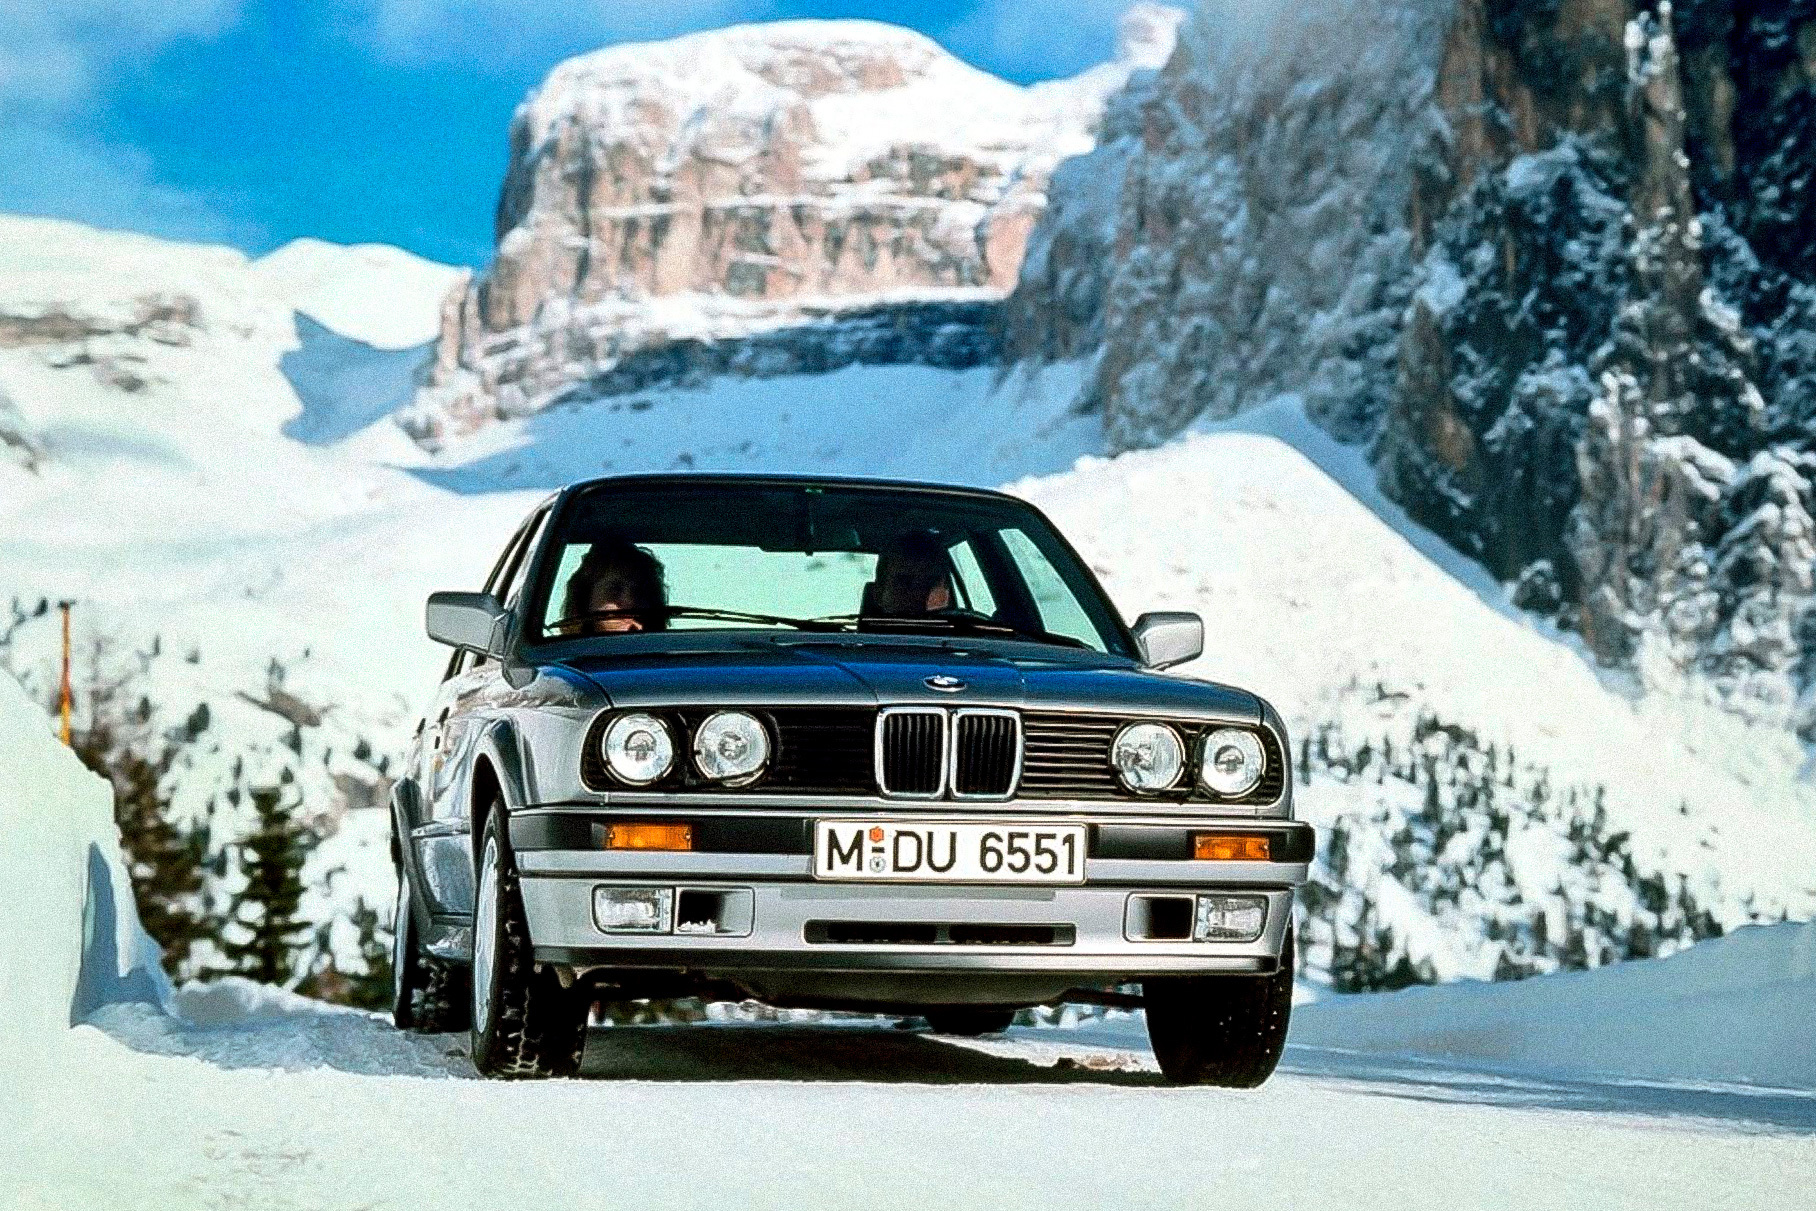 Начало 1990-х уже было отмечено бумом полного привода. Во всяком случае, практически каждая массовая модель теперь предлагалась с четырьмя ведущими колесами — даже BMW. Правда, мода быстро сошла на нет, чтобы затем вернуться с новой силой в наши дни.